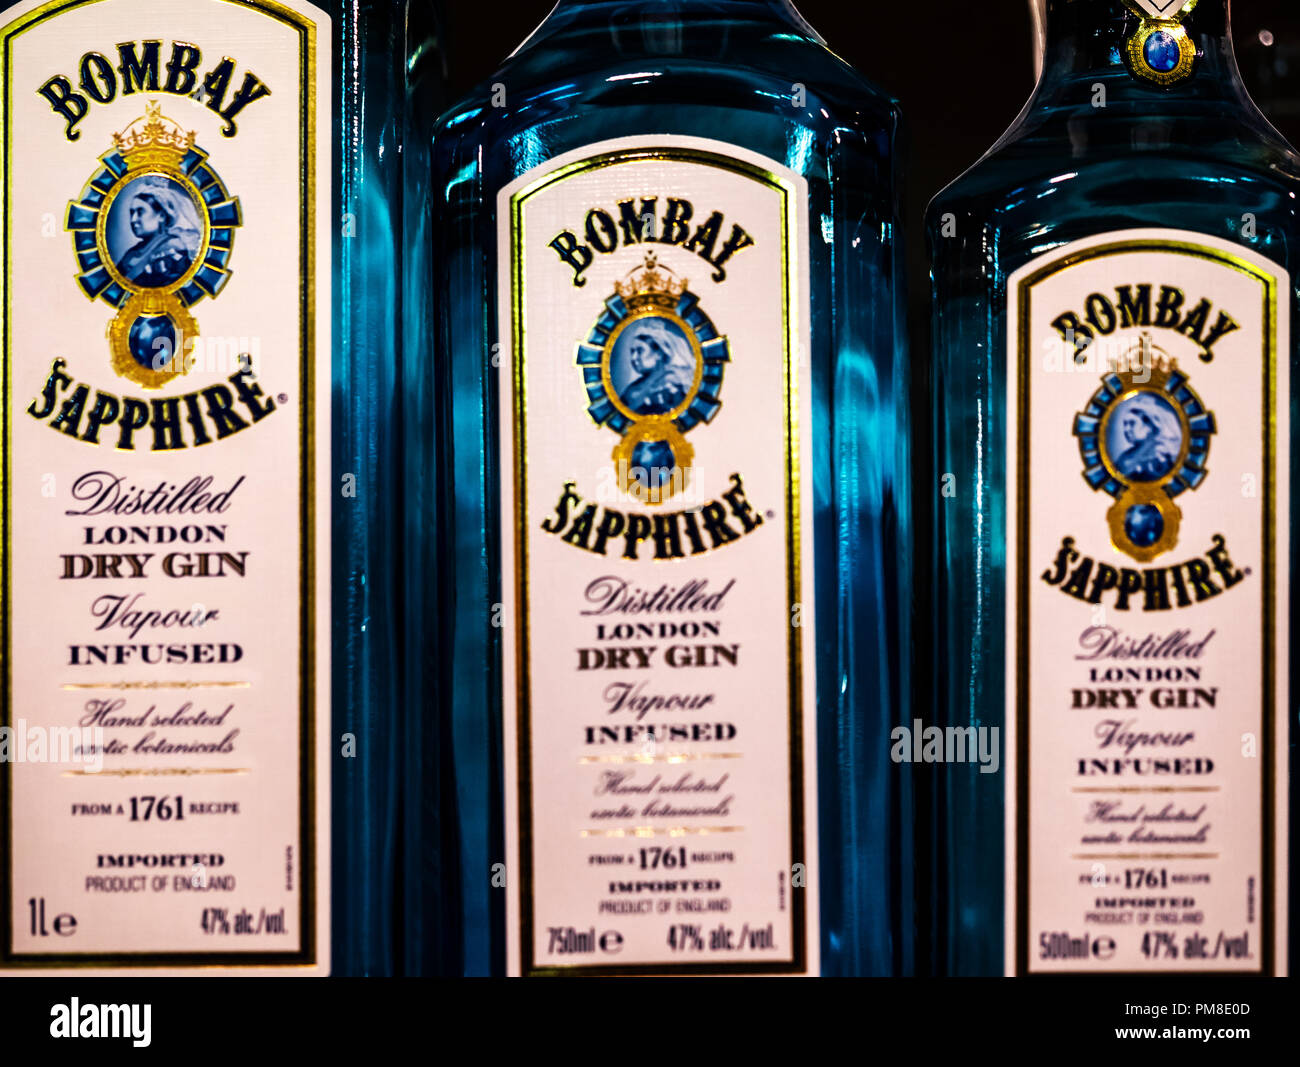 Reihen von Bombay Sapphire Gin auf Lager Regal gesehen. Der Name stammt von Gin's Popularität in Indien während des britischen Raj. Stockfoto